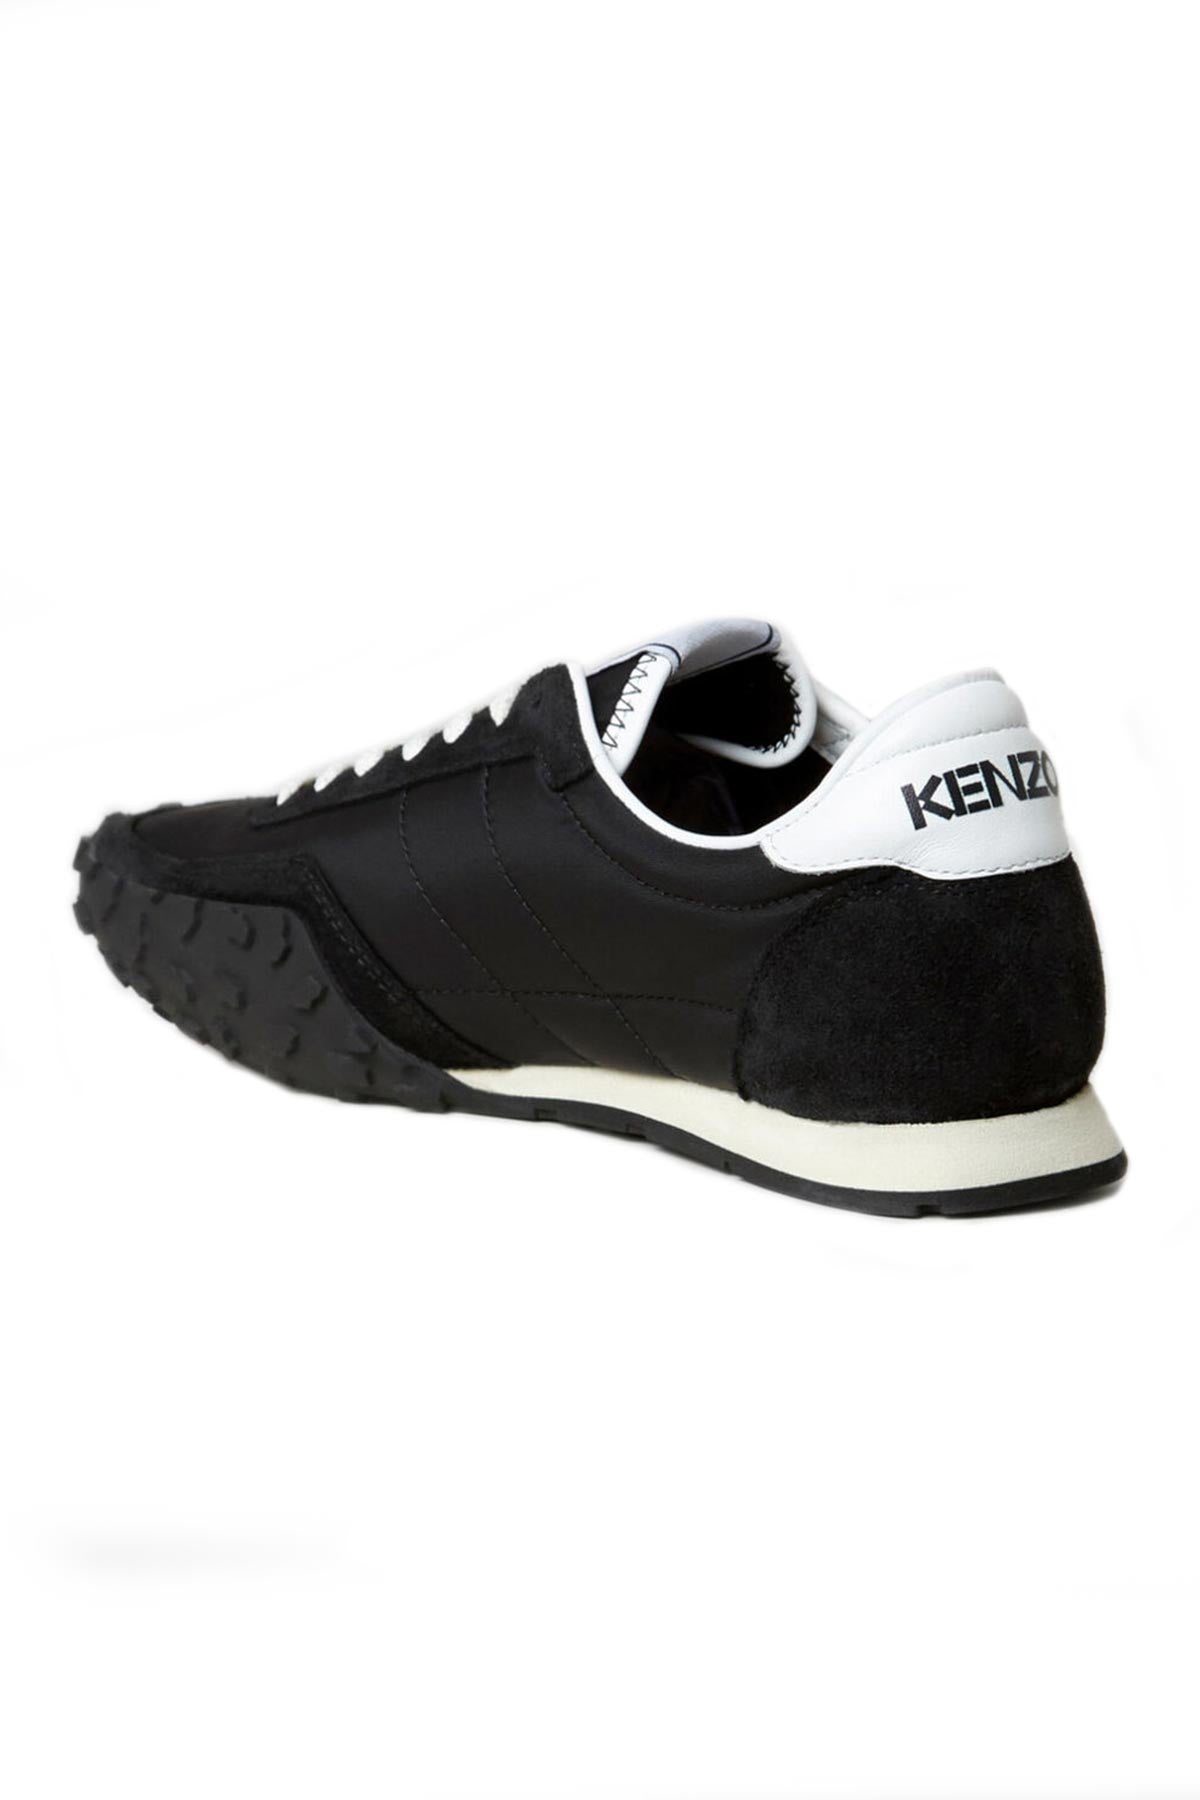 Kenzo Sneaker Ayakkabı-Libas Trendy Fashion Store